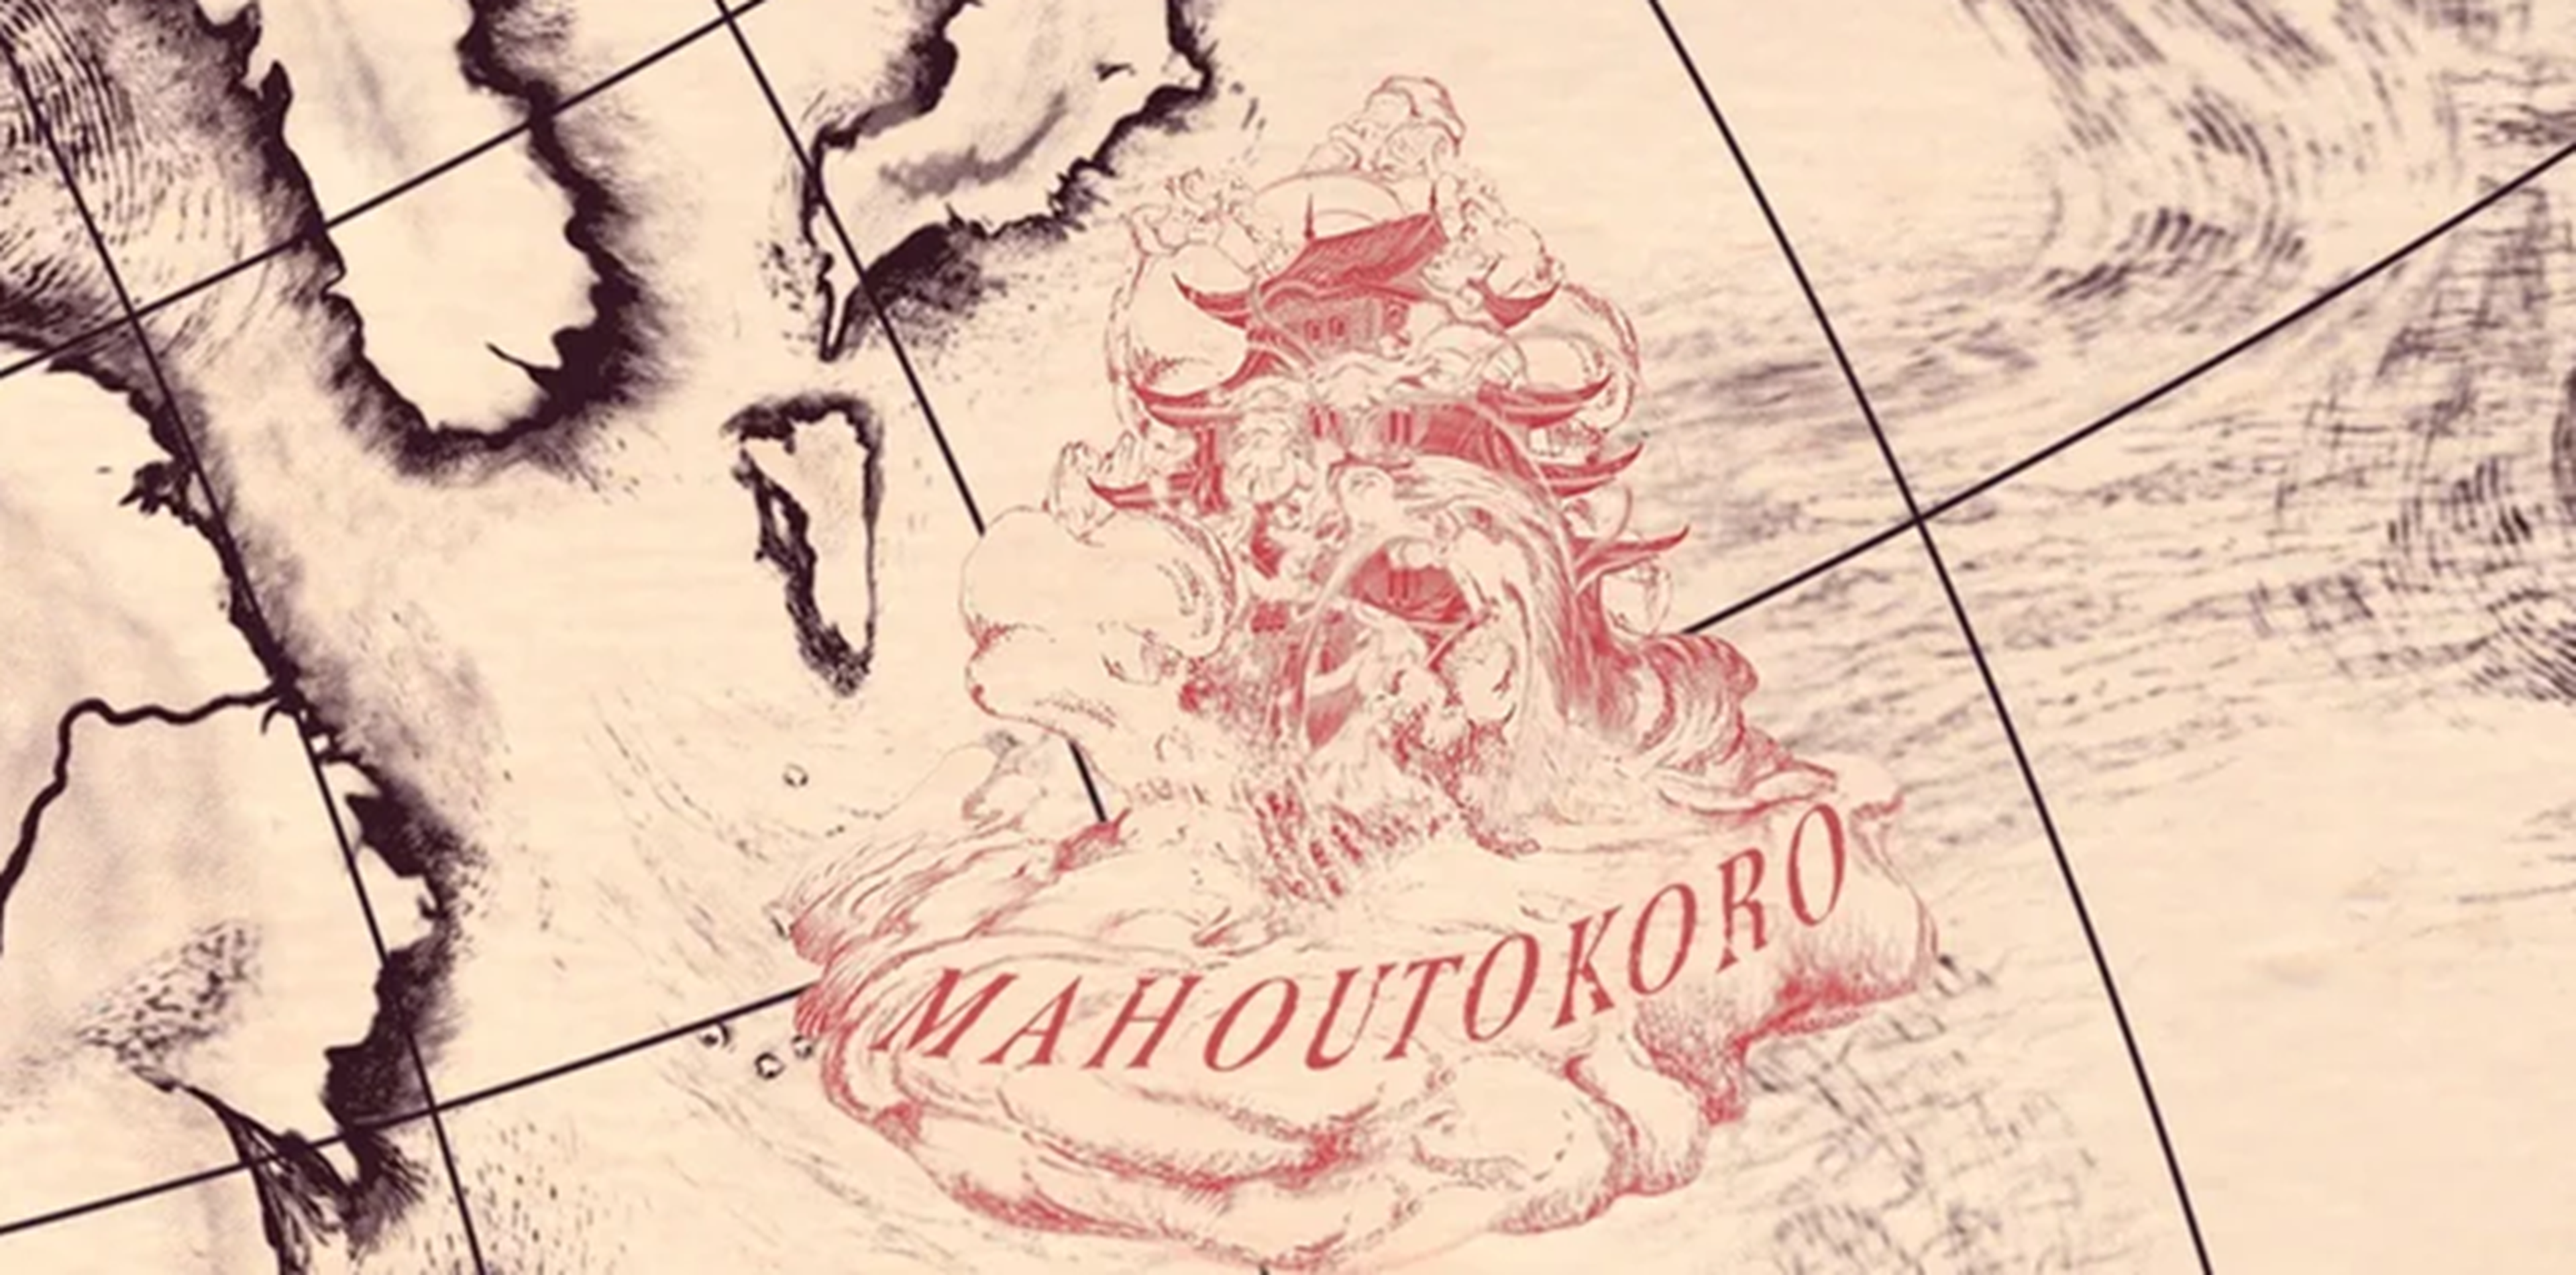 Mahoutokoro - Túnicas cambiantes